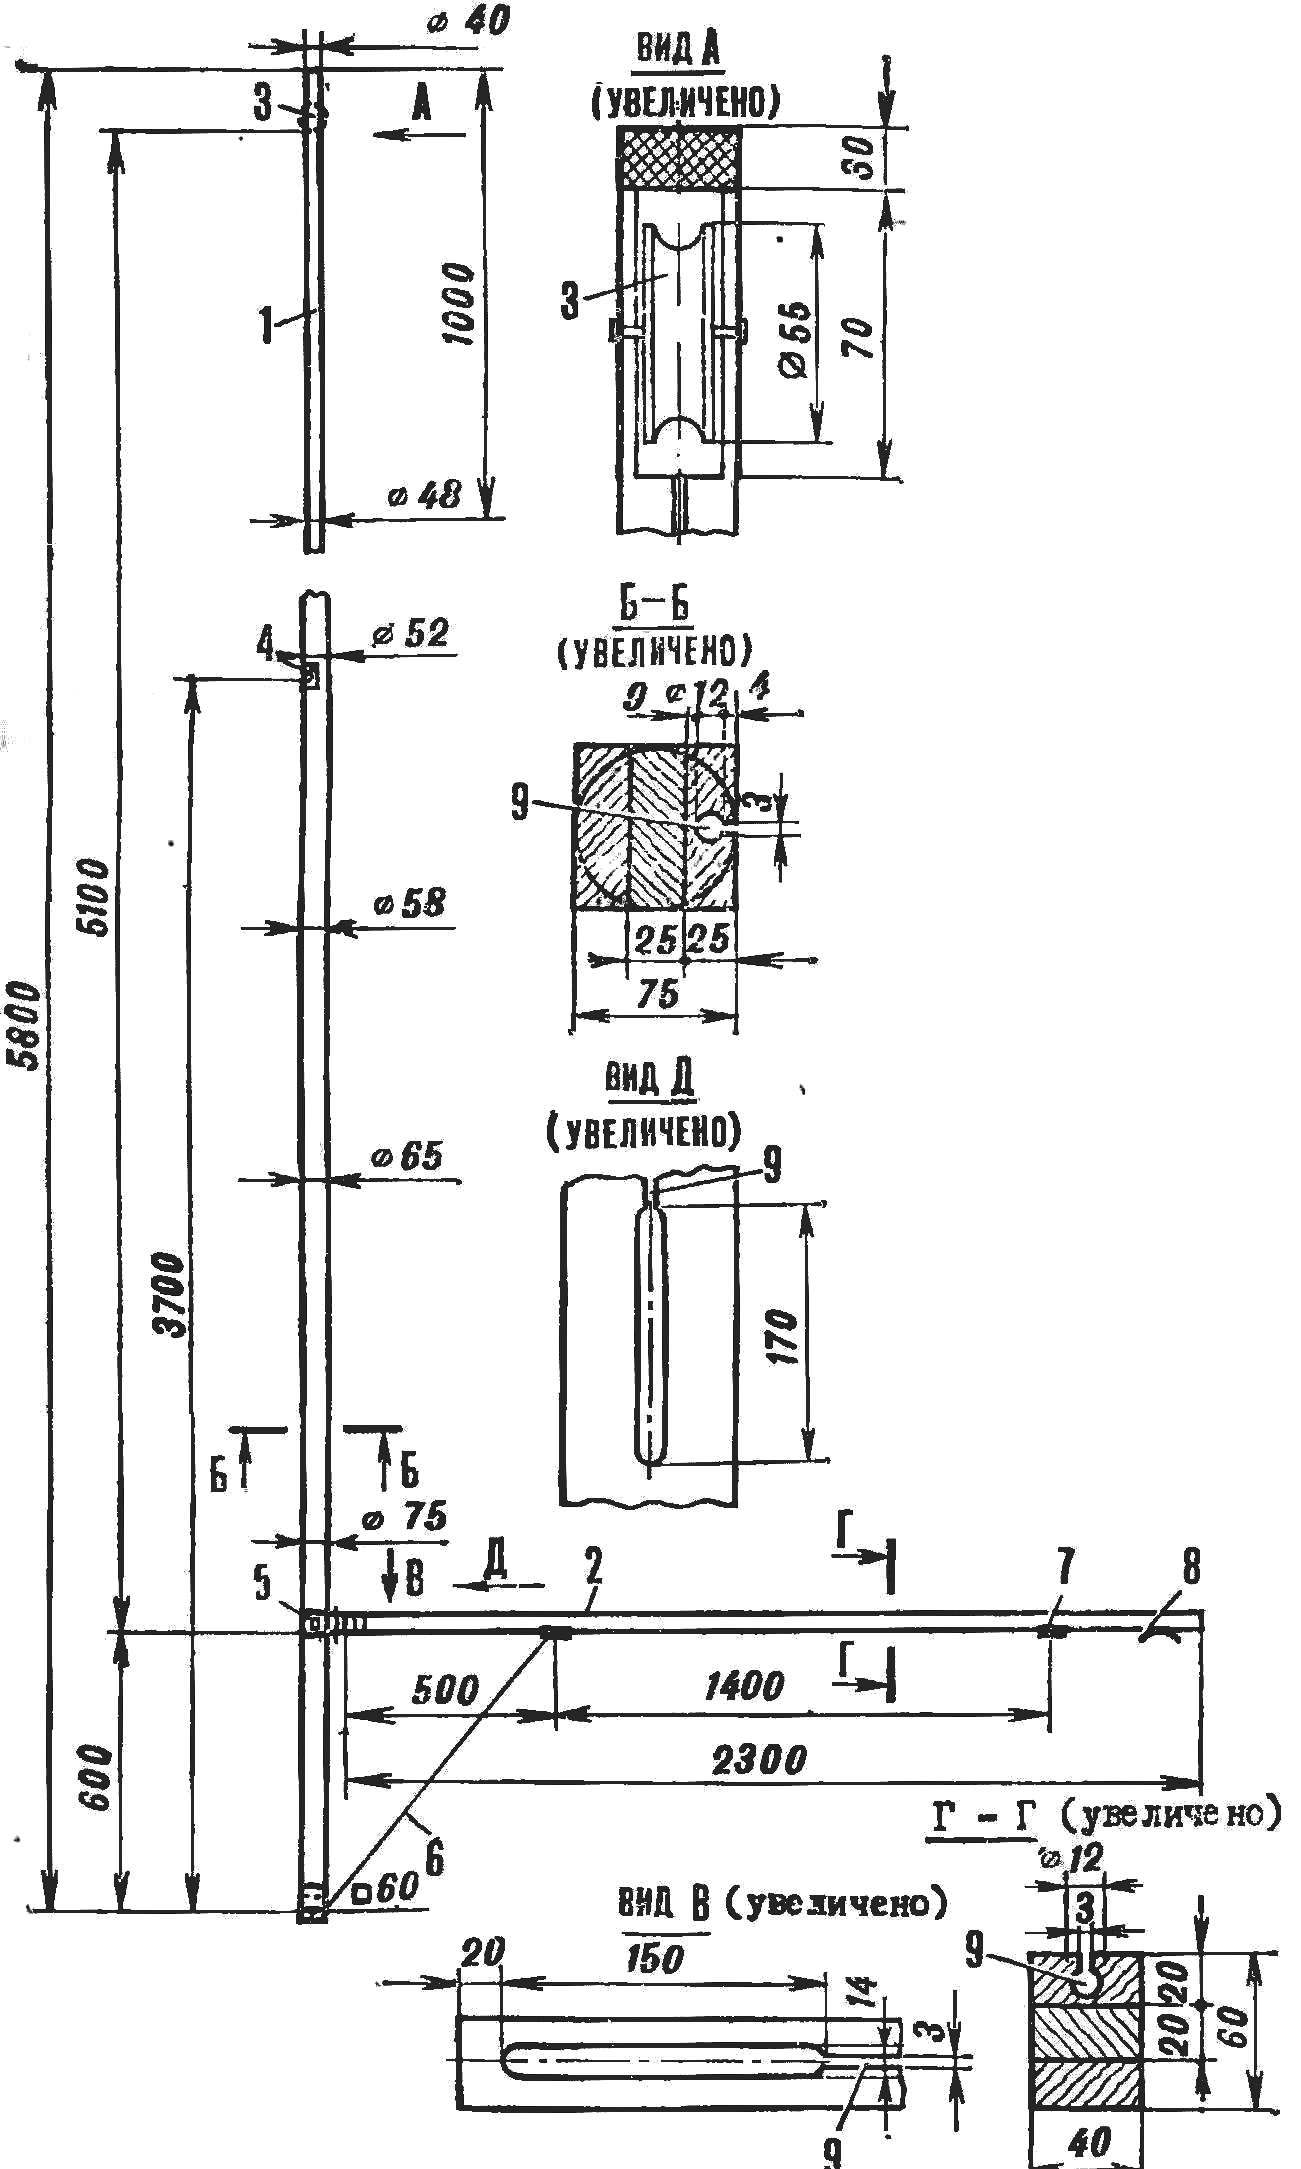 Fig. 7. Mast